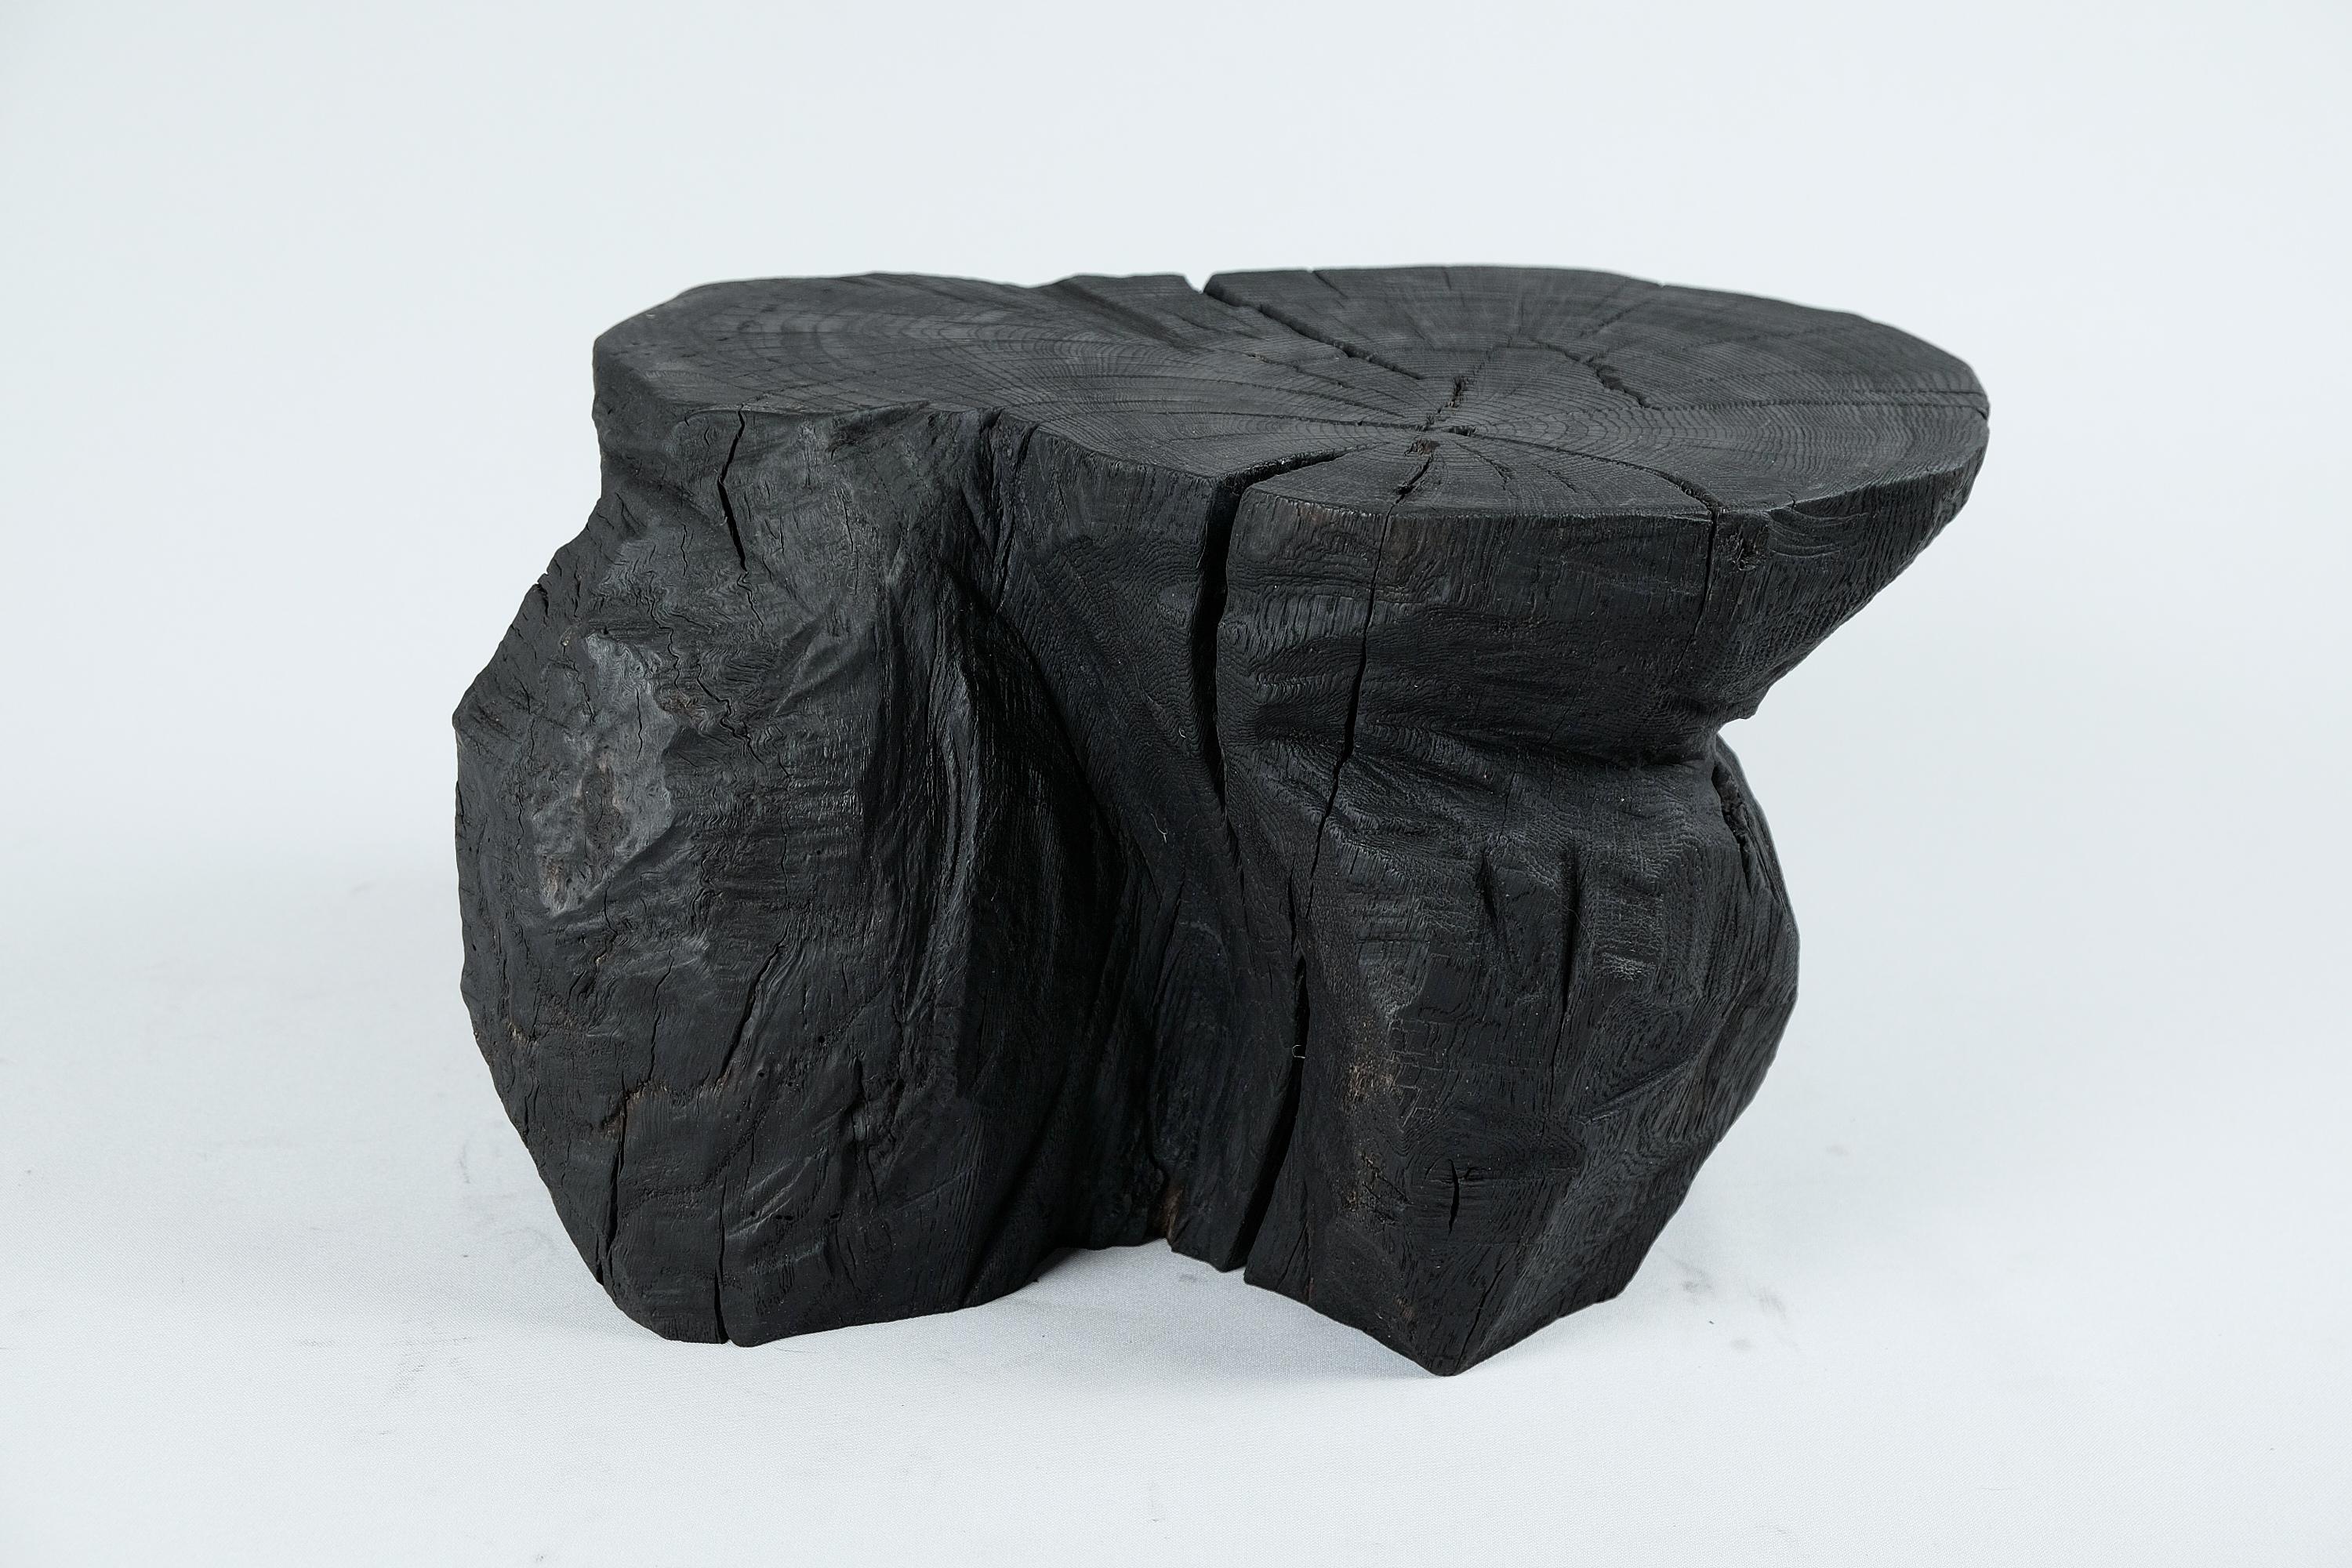 Primitive Solid Burnt Wood, Sculptural Stool/Side Table, Rock, Original Design, Logniture For Sale